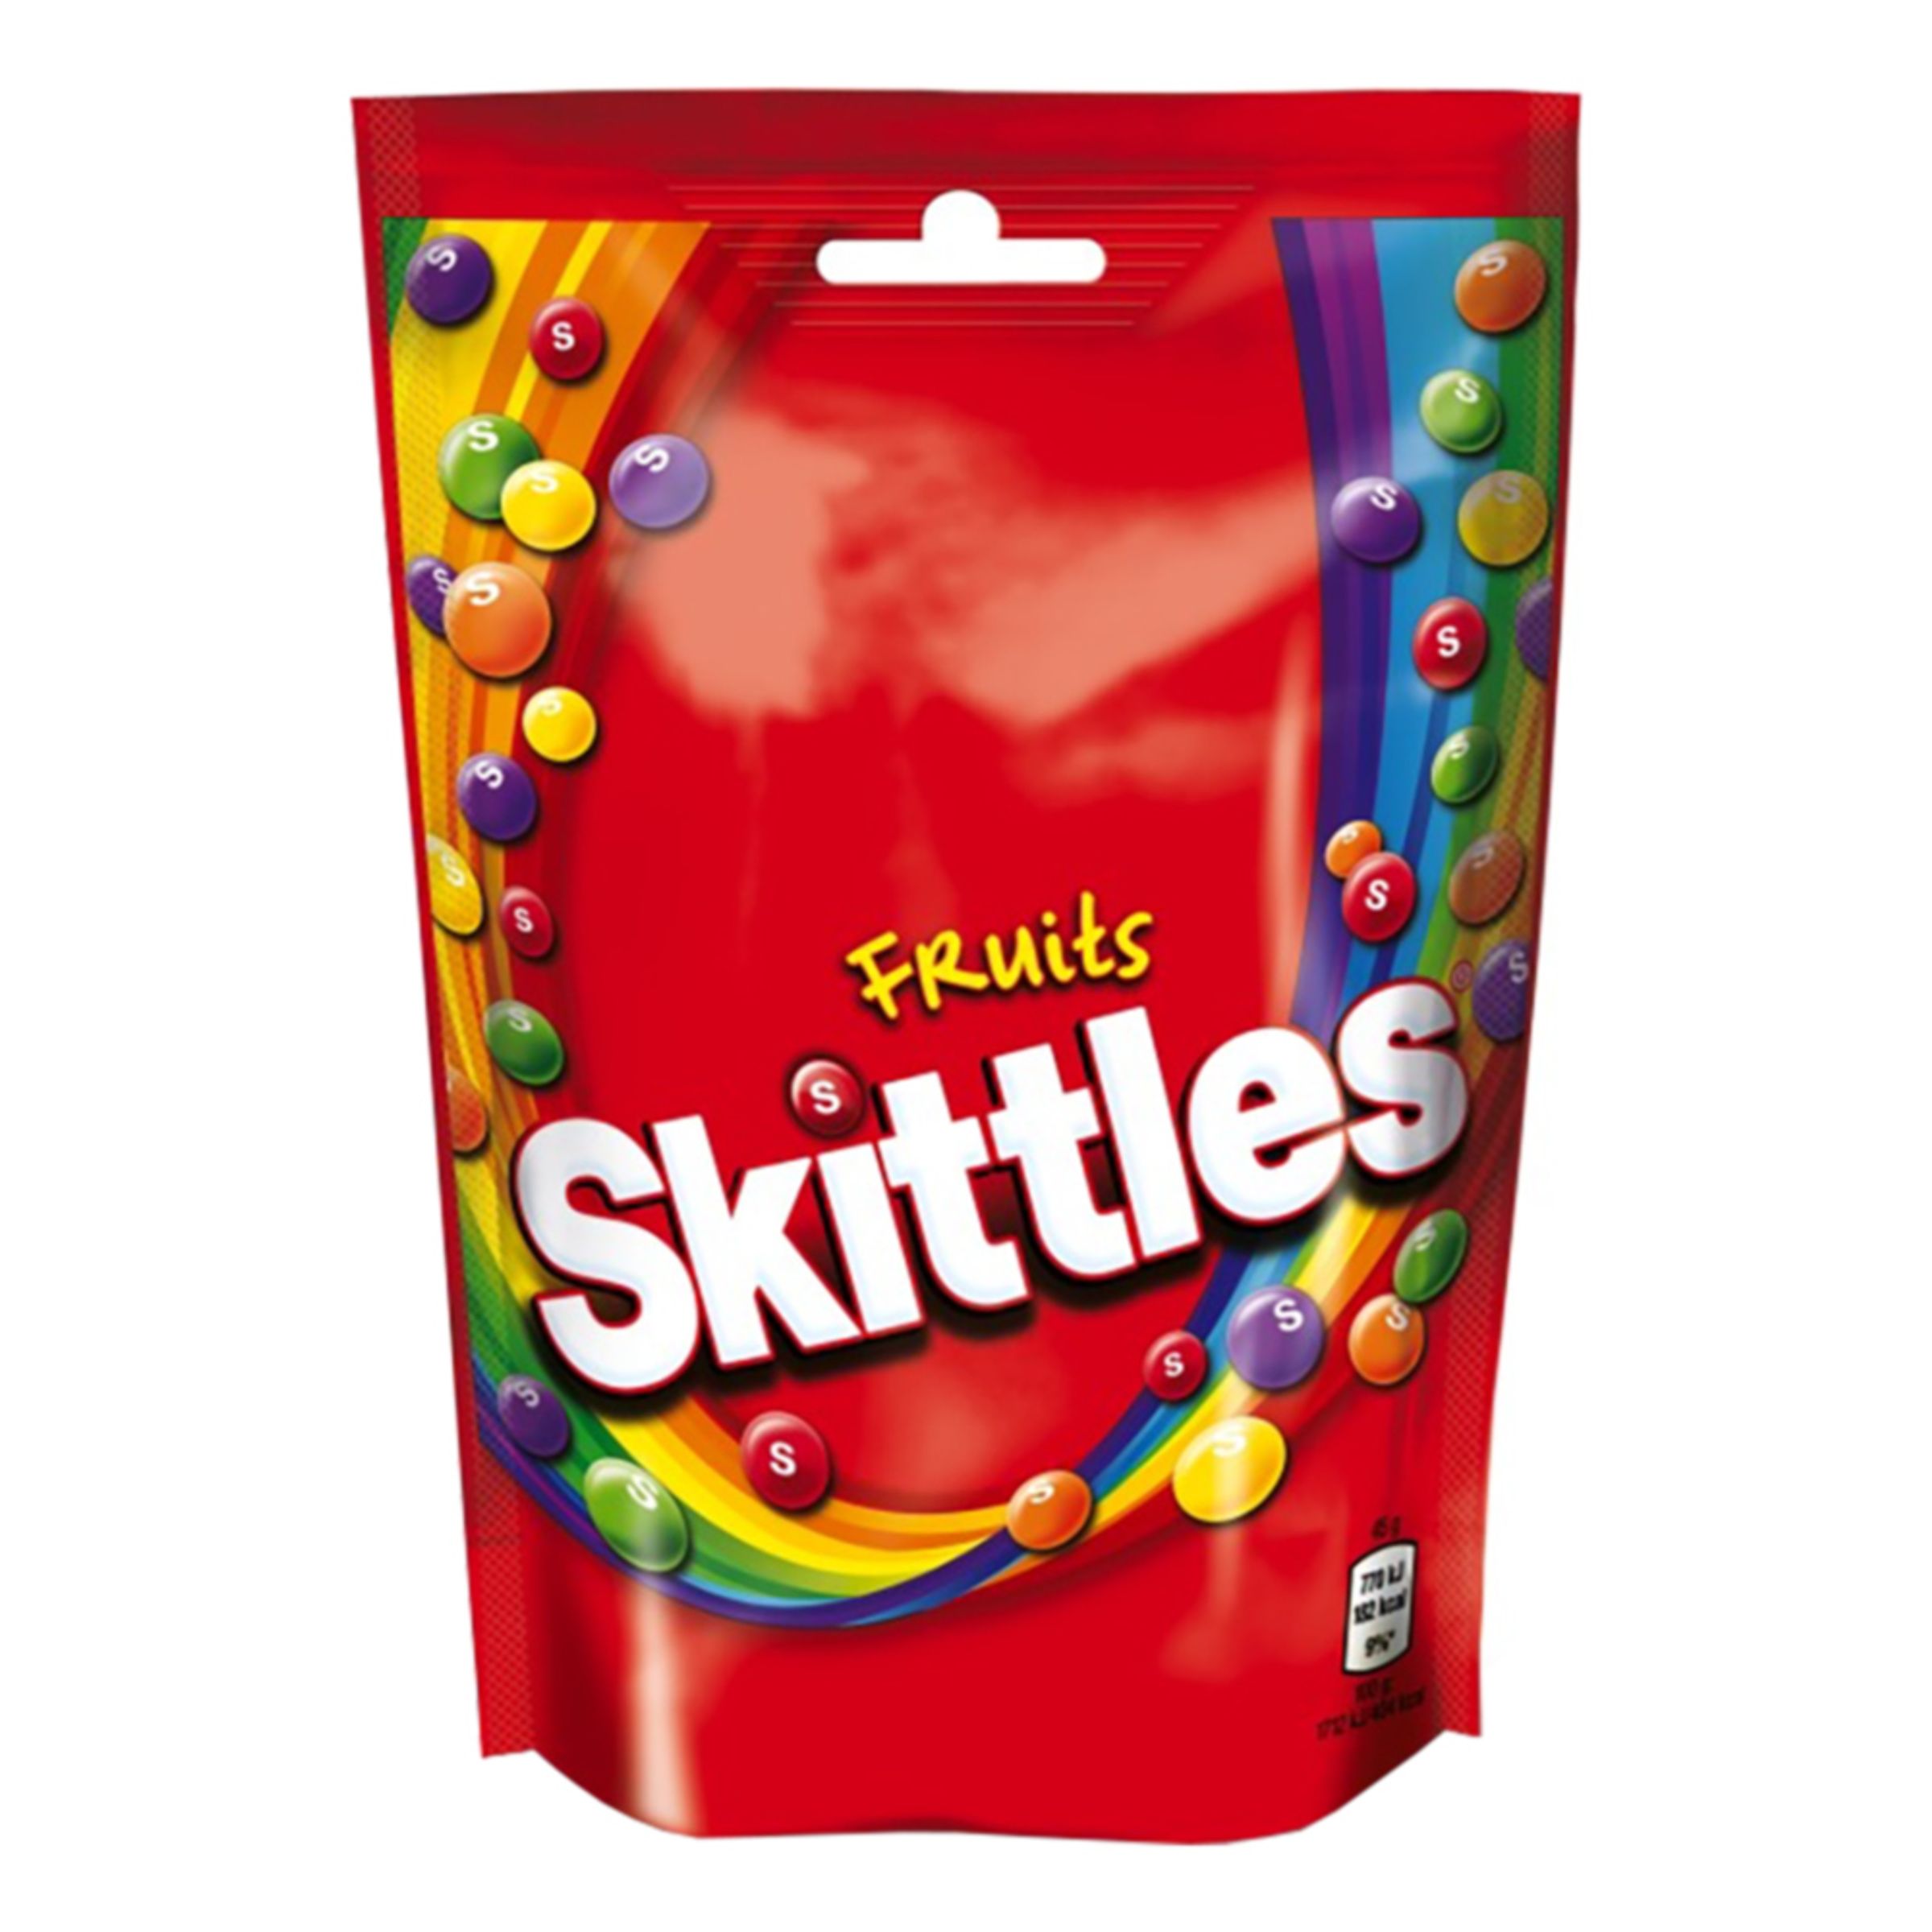 Skittles Original - Liten påse